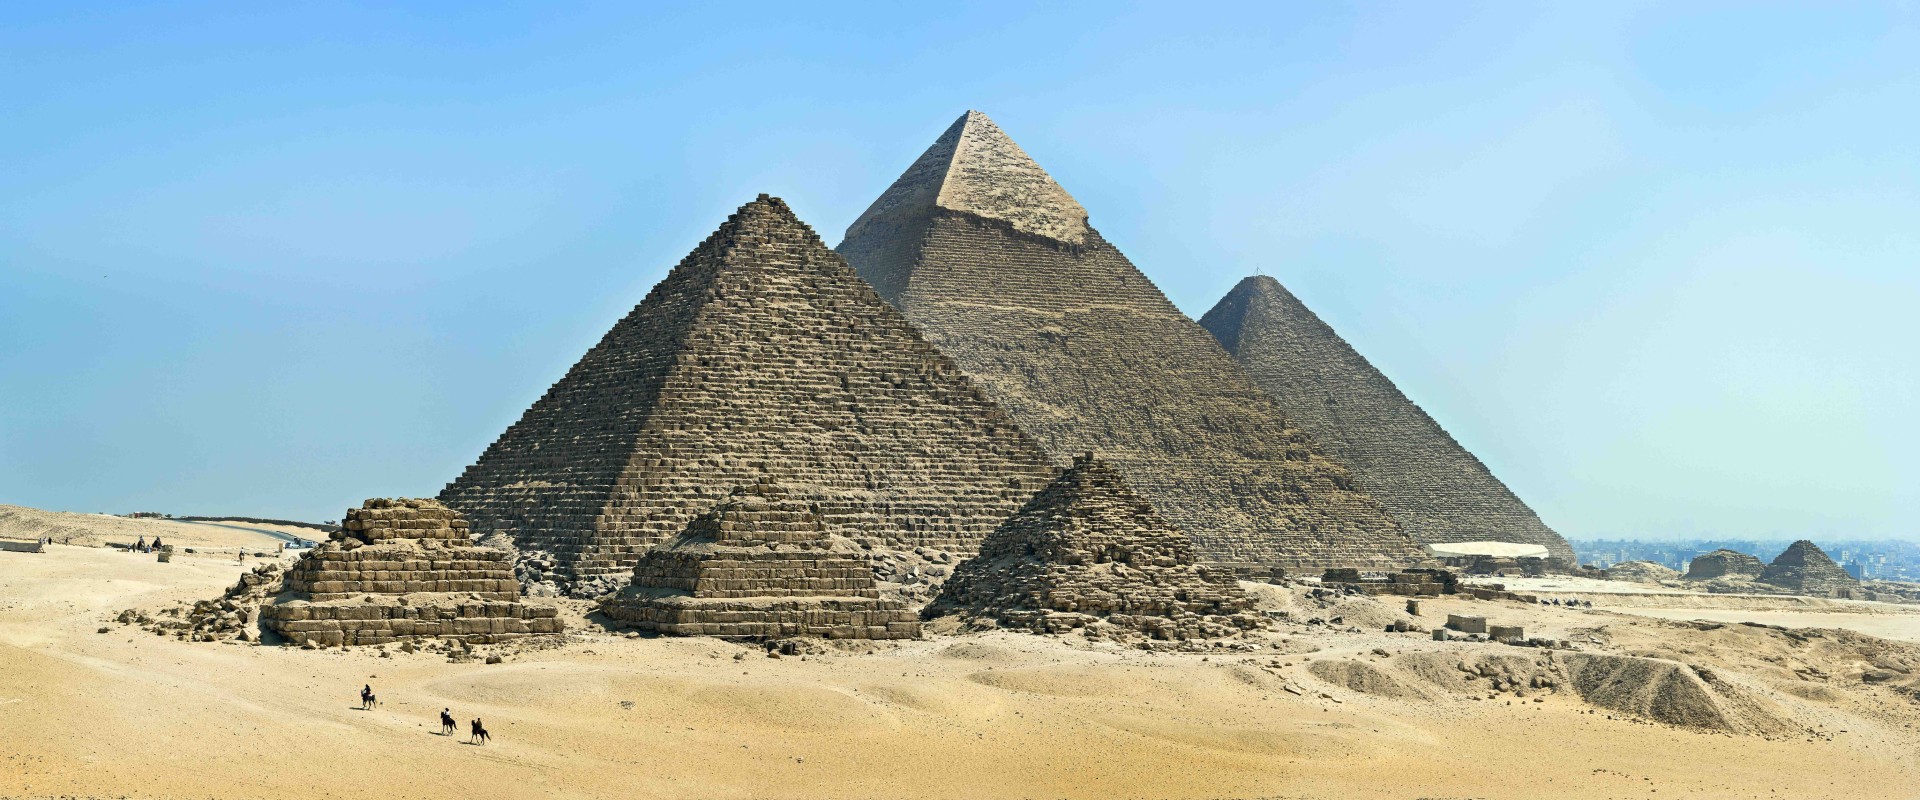 Mısır Piramitleri’nin Nasıl İnşa Edildiğine Dair Binlerce Yıllık Gizem Çözülmüş Olabilir!